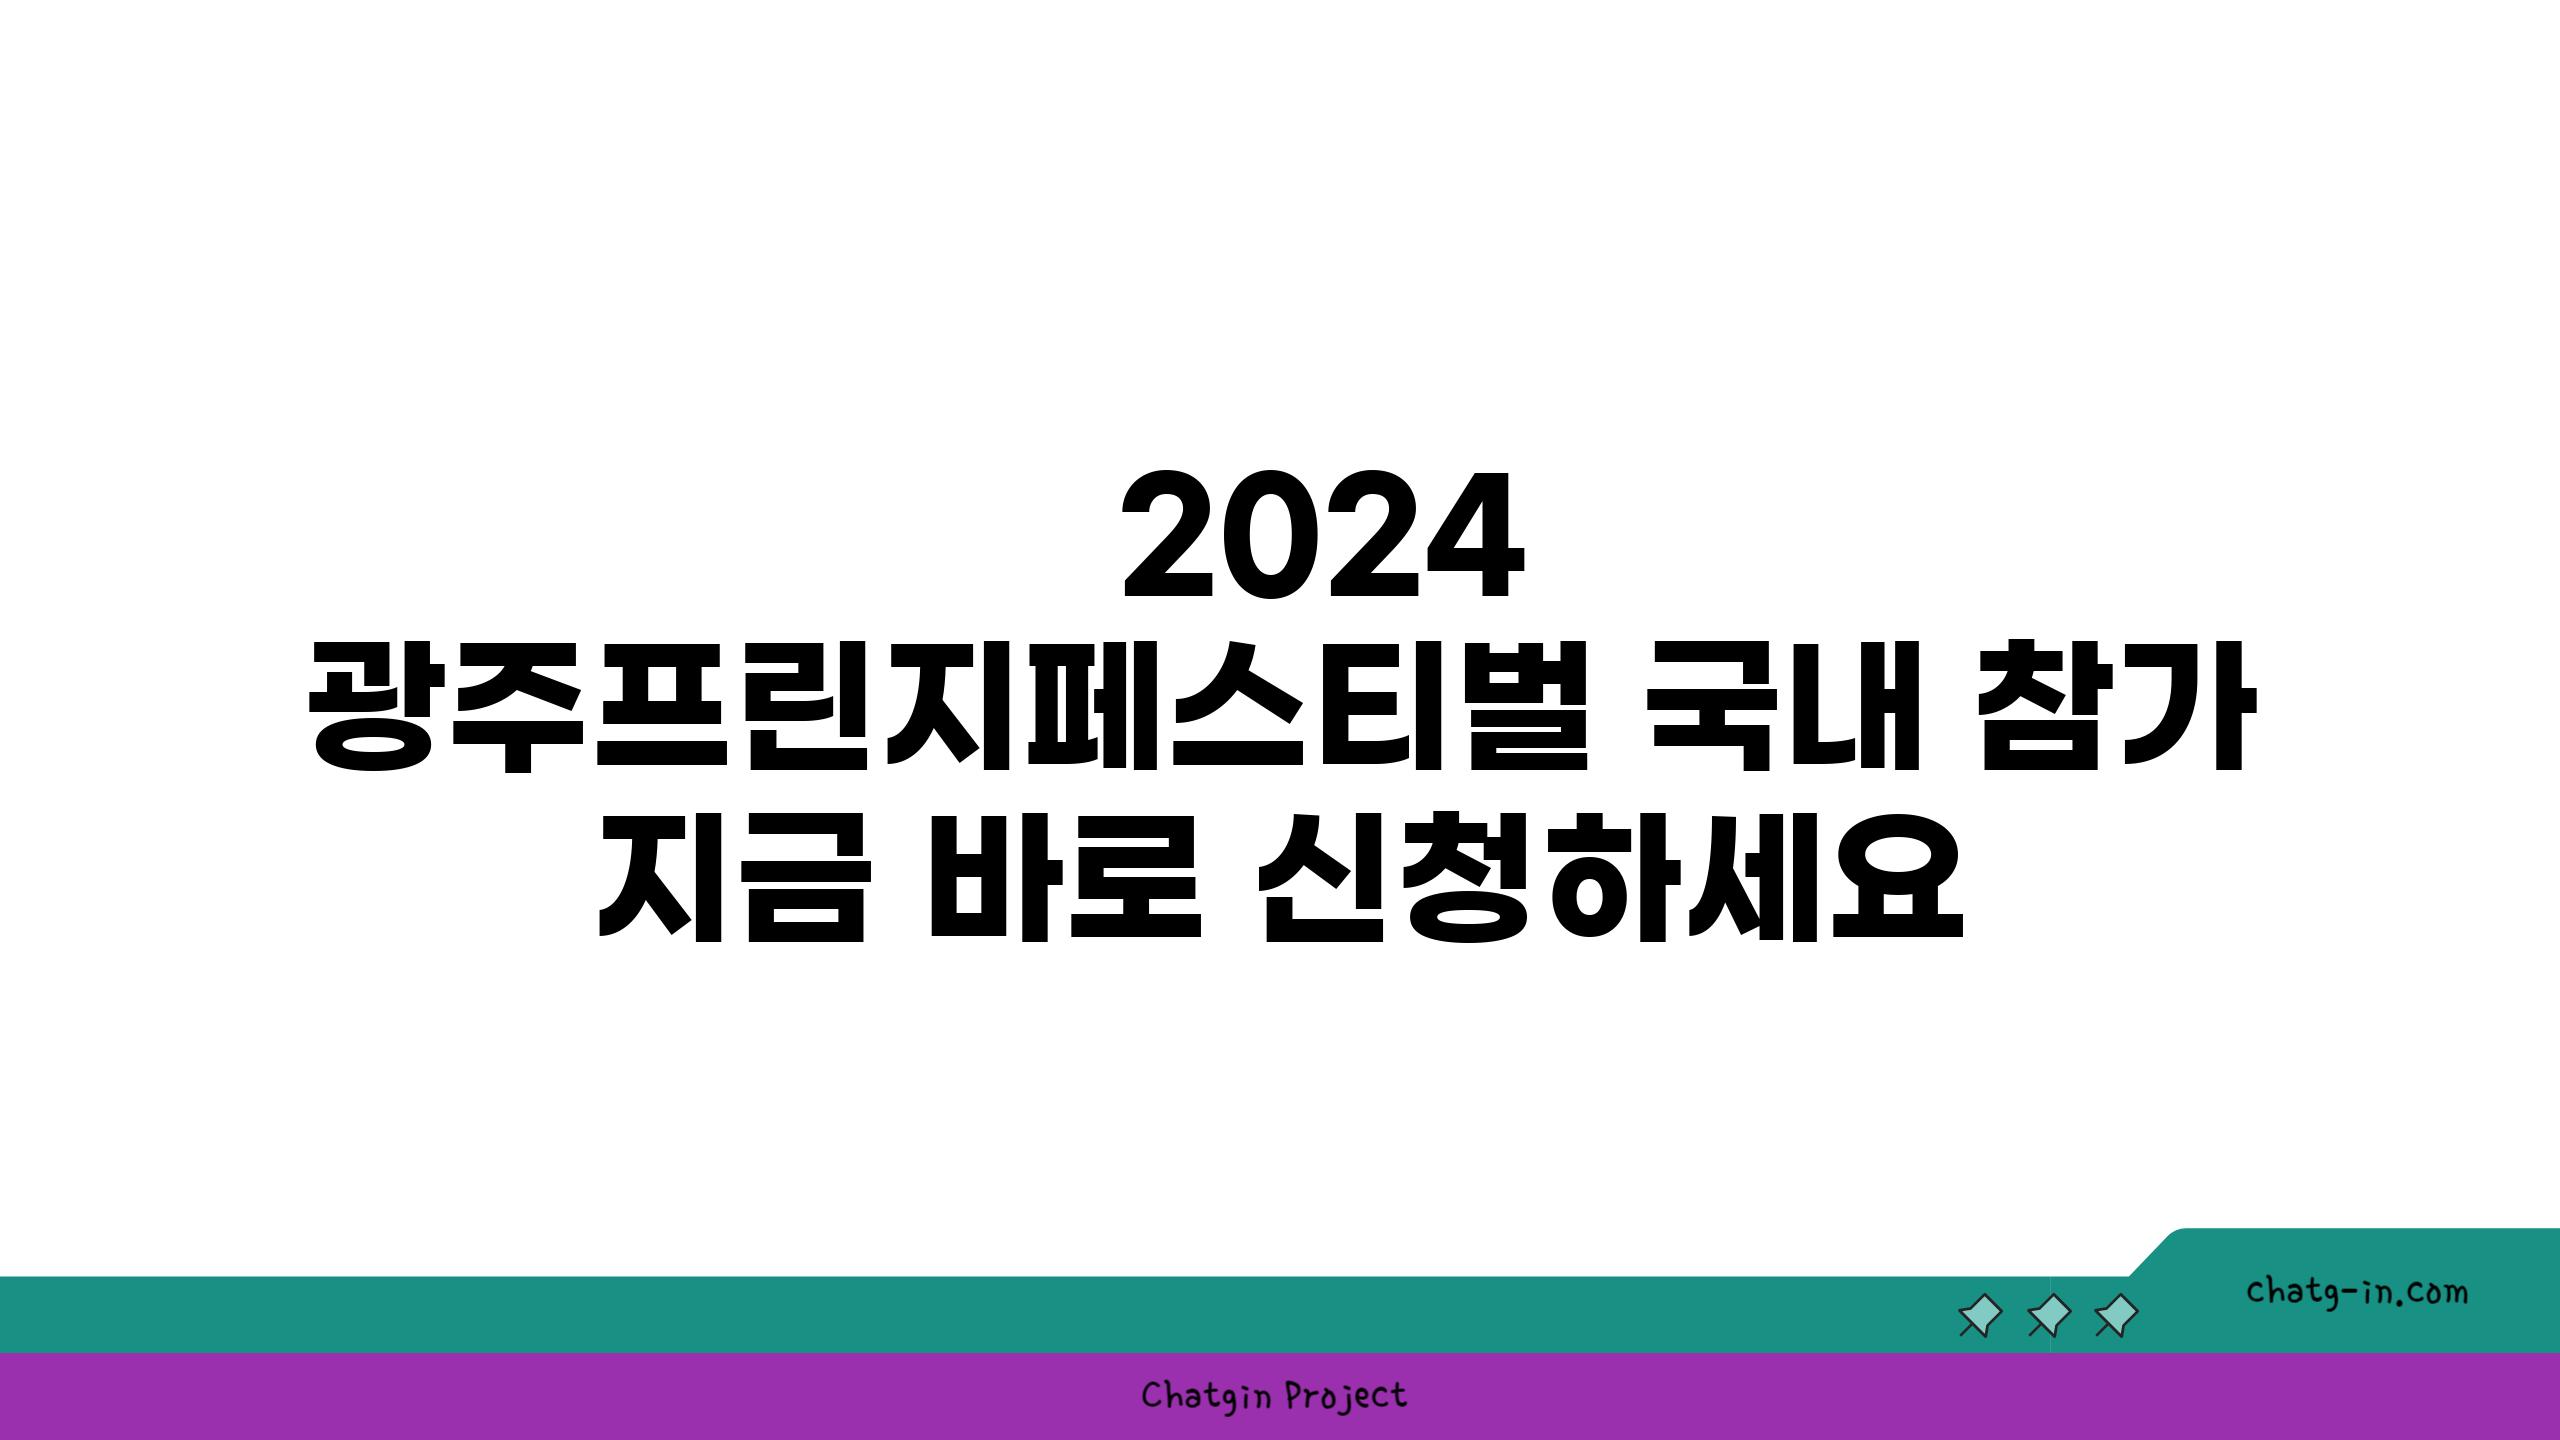   2024 광주프린지페스티벌 국내 참가 지금 바로 신청하세요